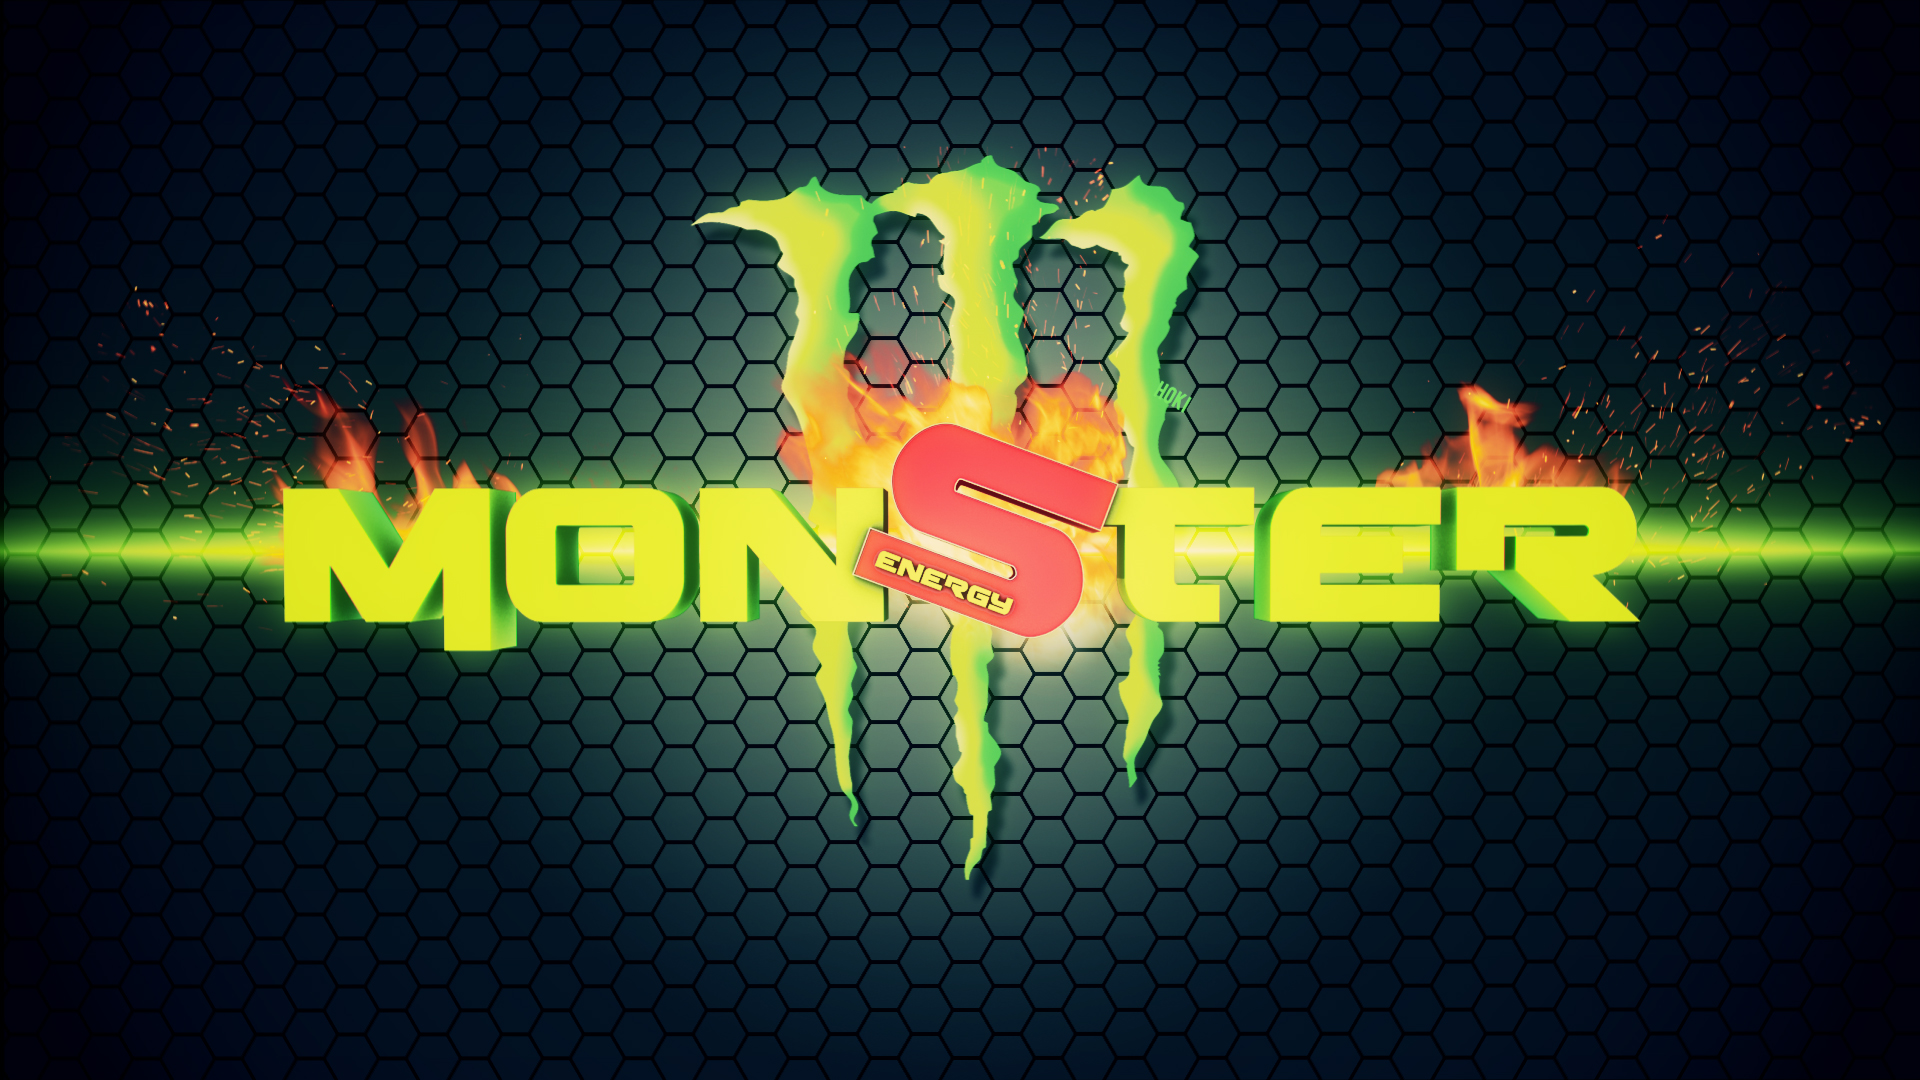 Monster Energy Wallpaper Hd Pixelstalk Net